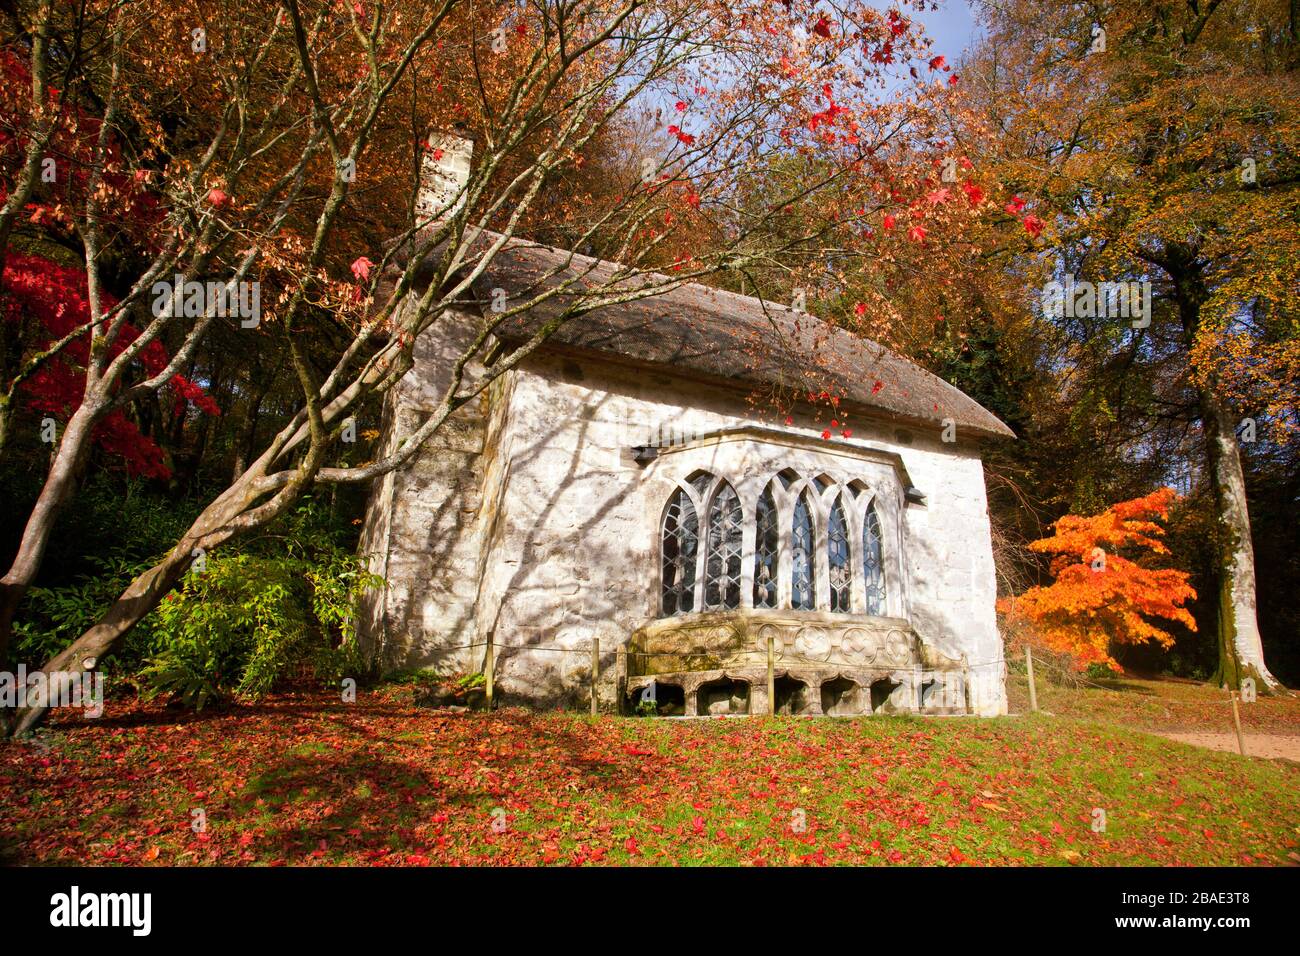 Couleur d'automne sur un arbre acer à l'extérieur du cottage gothique en chaume à Stourhead Gardens, Wiltshire, Angleterre, Royaume-Uni Banque D'Images